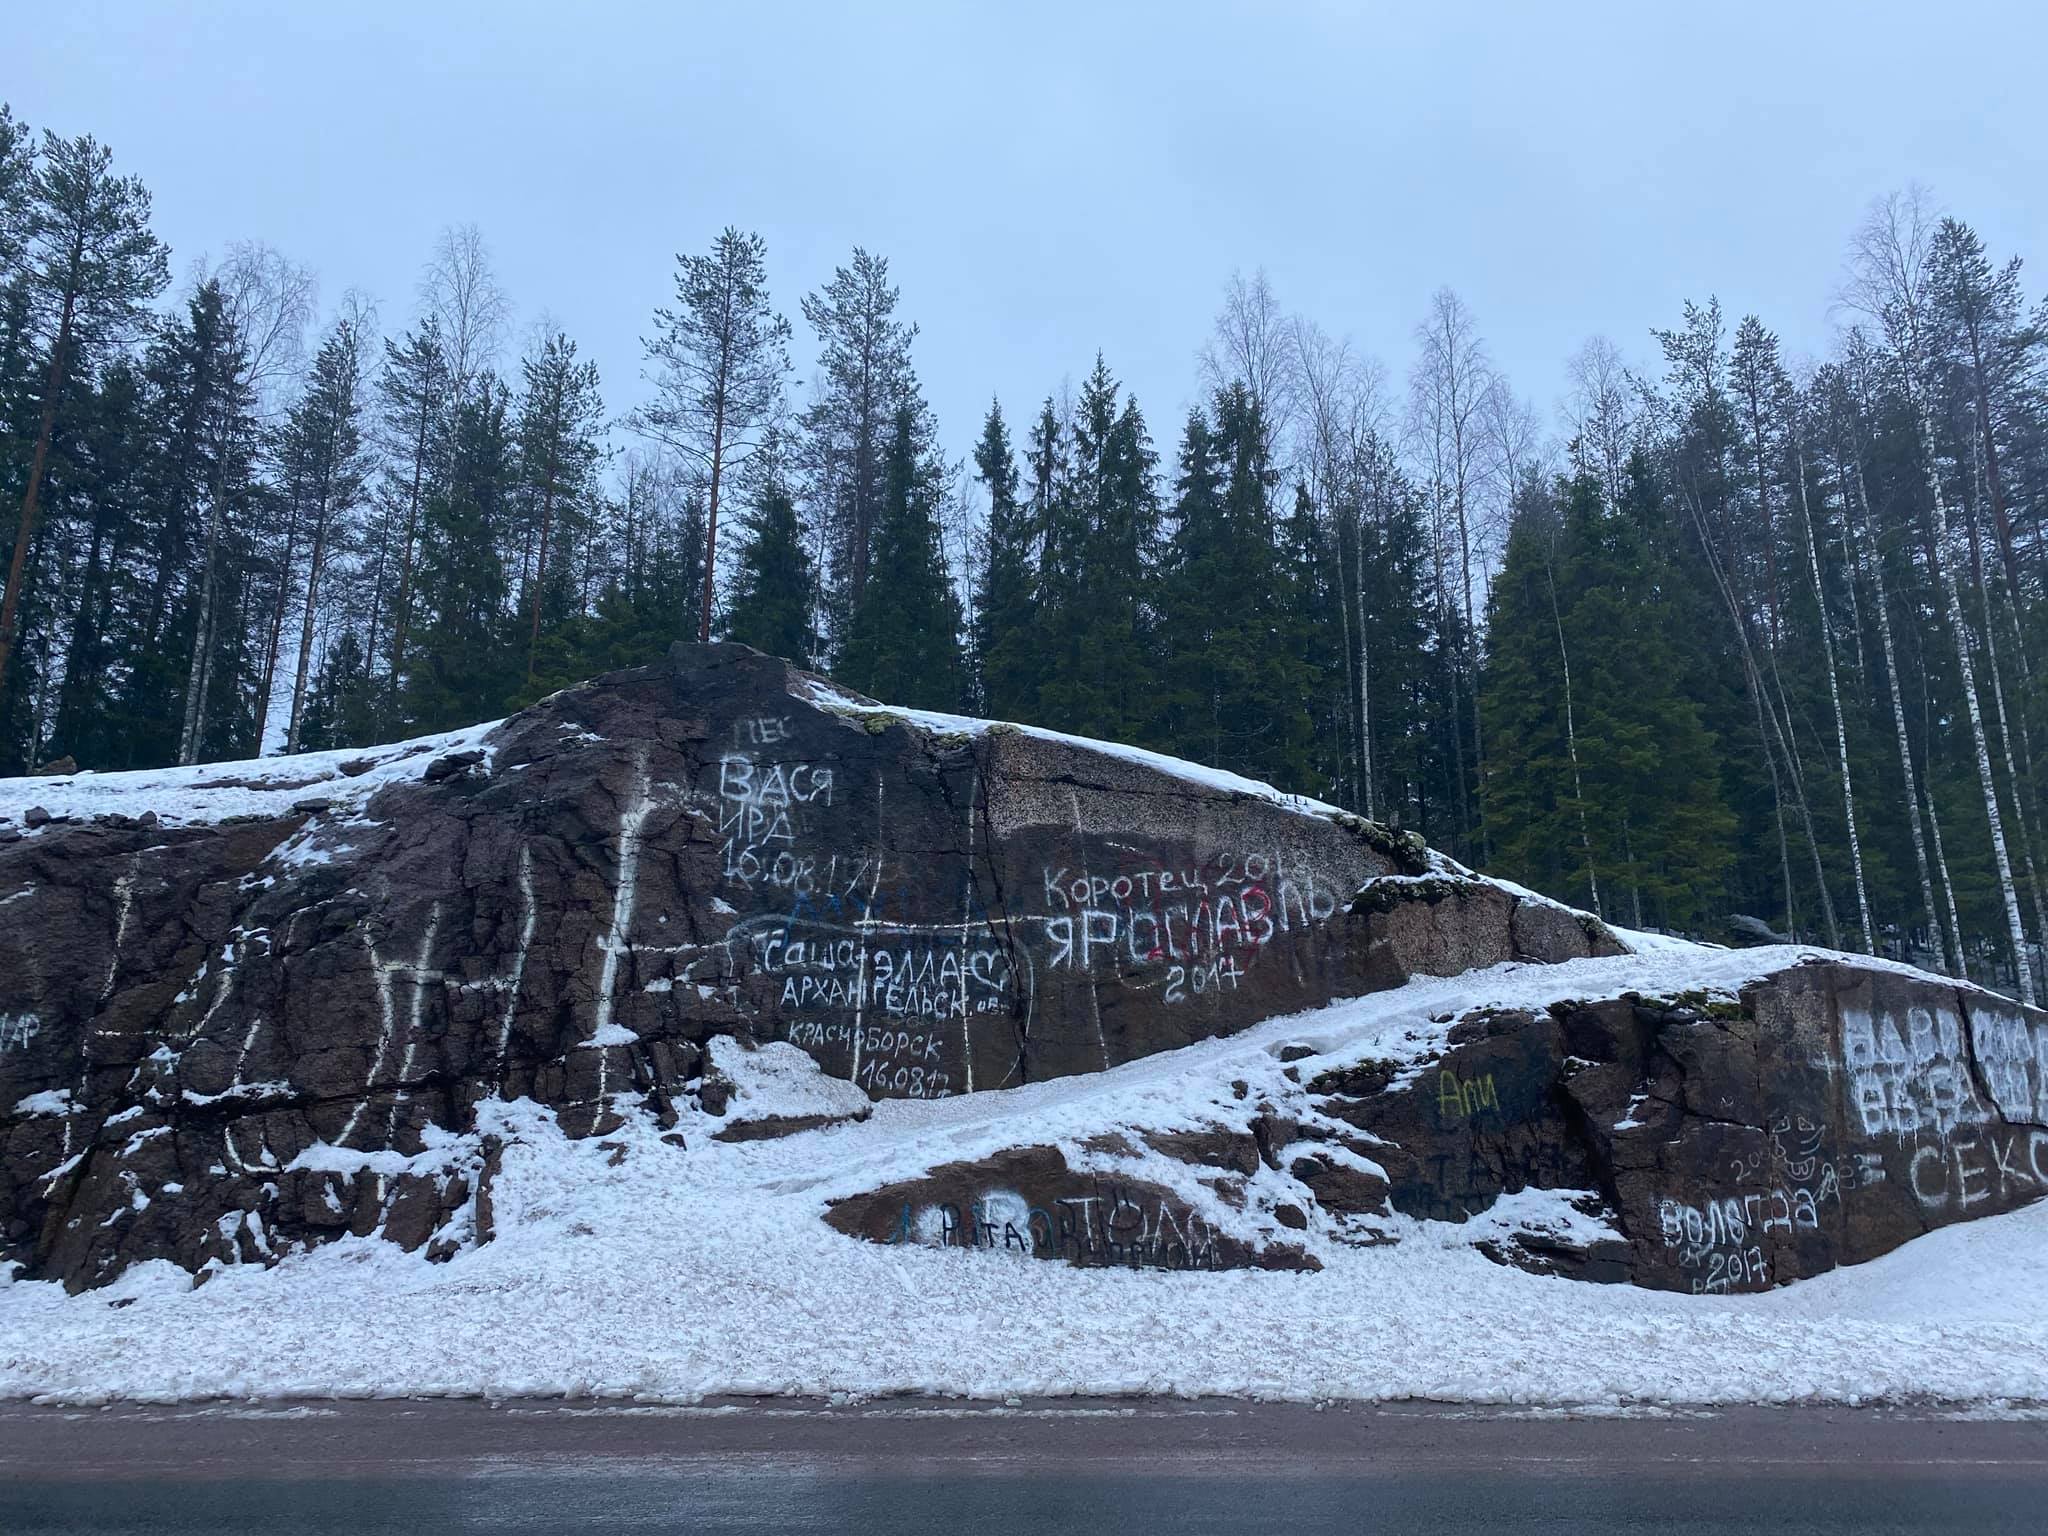 Творческий предприниматель Петрозаводска решил отмыть от надписей все скалы вдоль трассы в Карелии